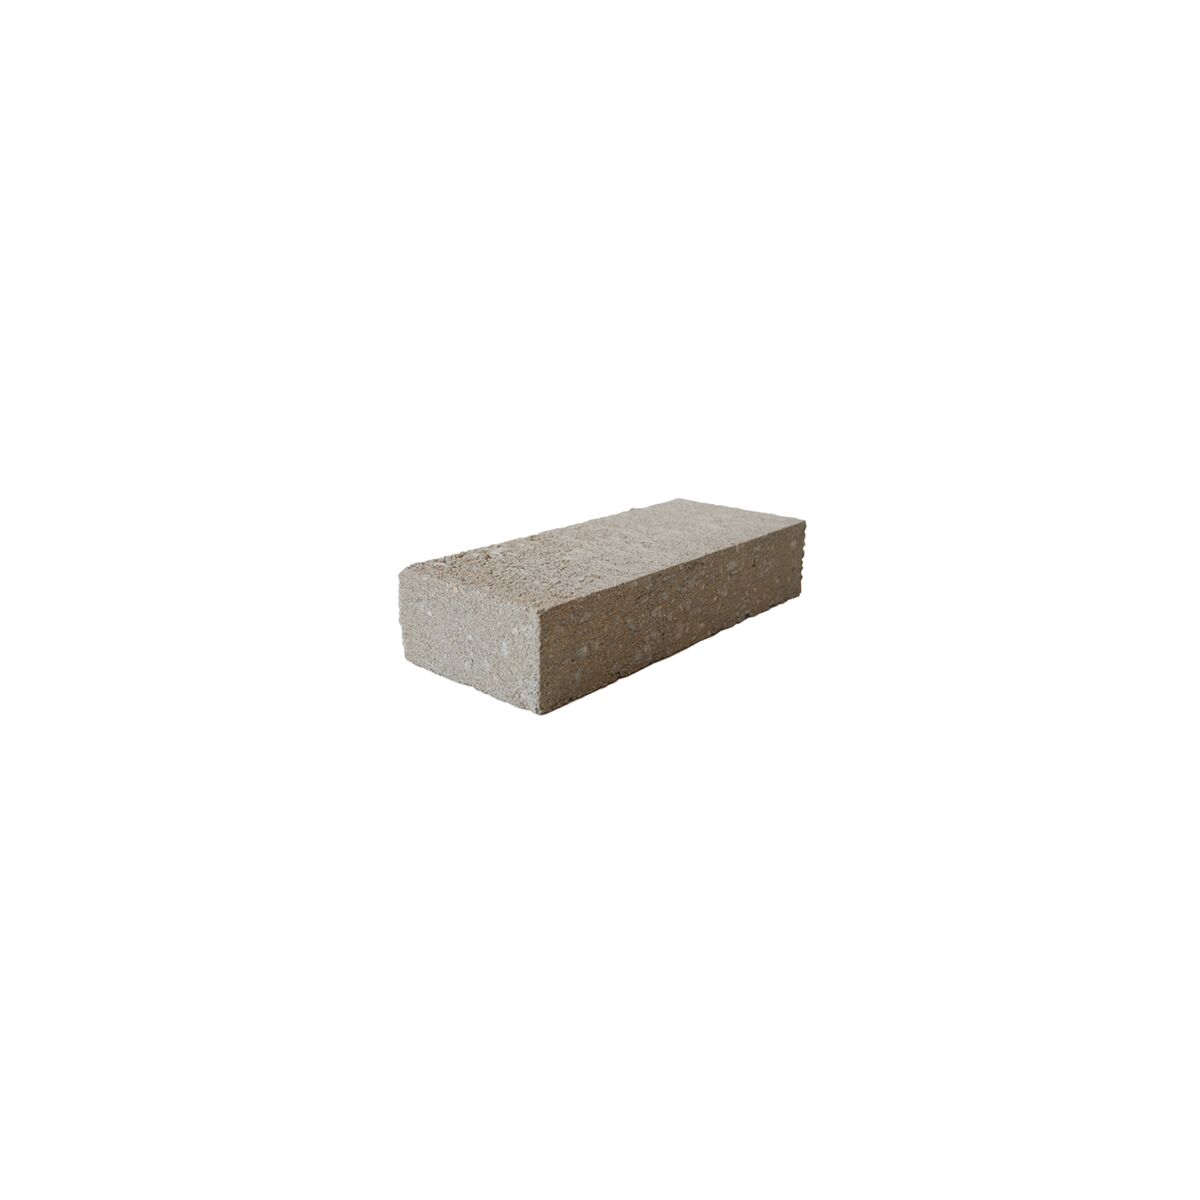 Afstandhouder in beton 20 x 8 x 4 cm